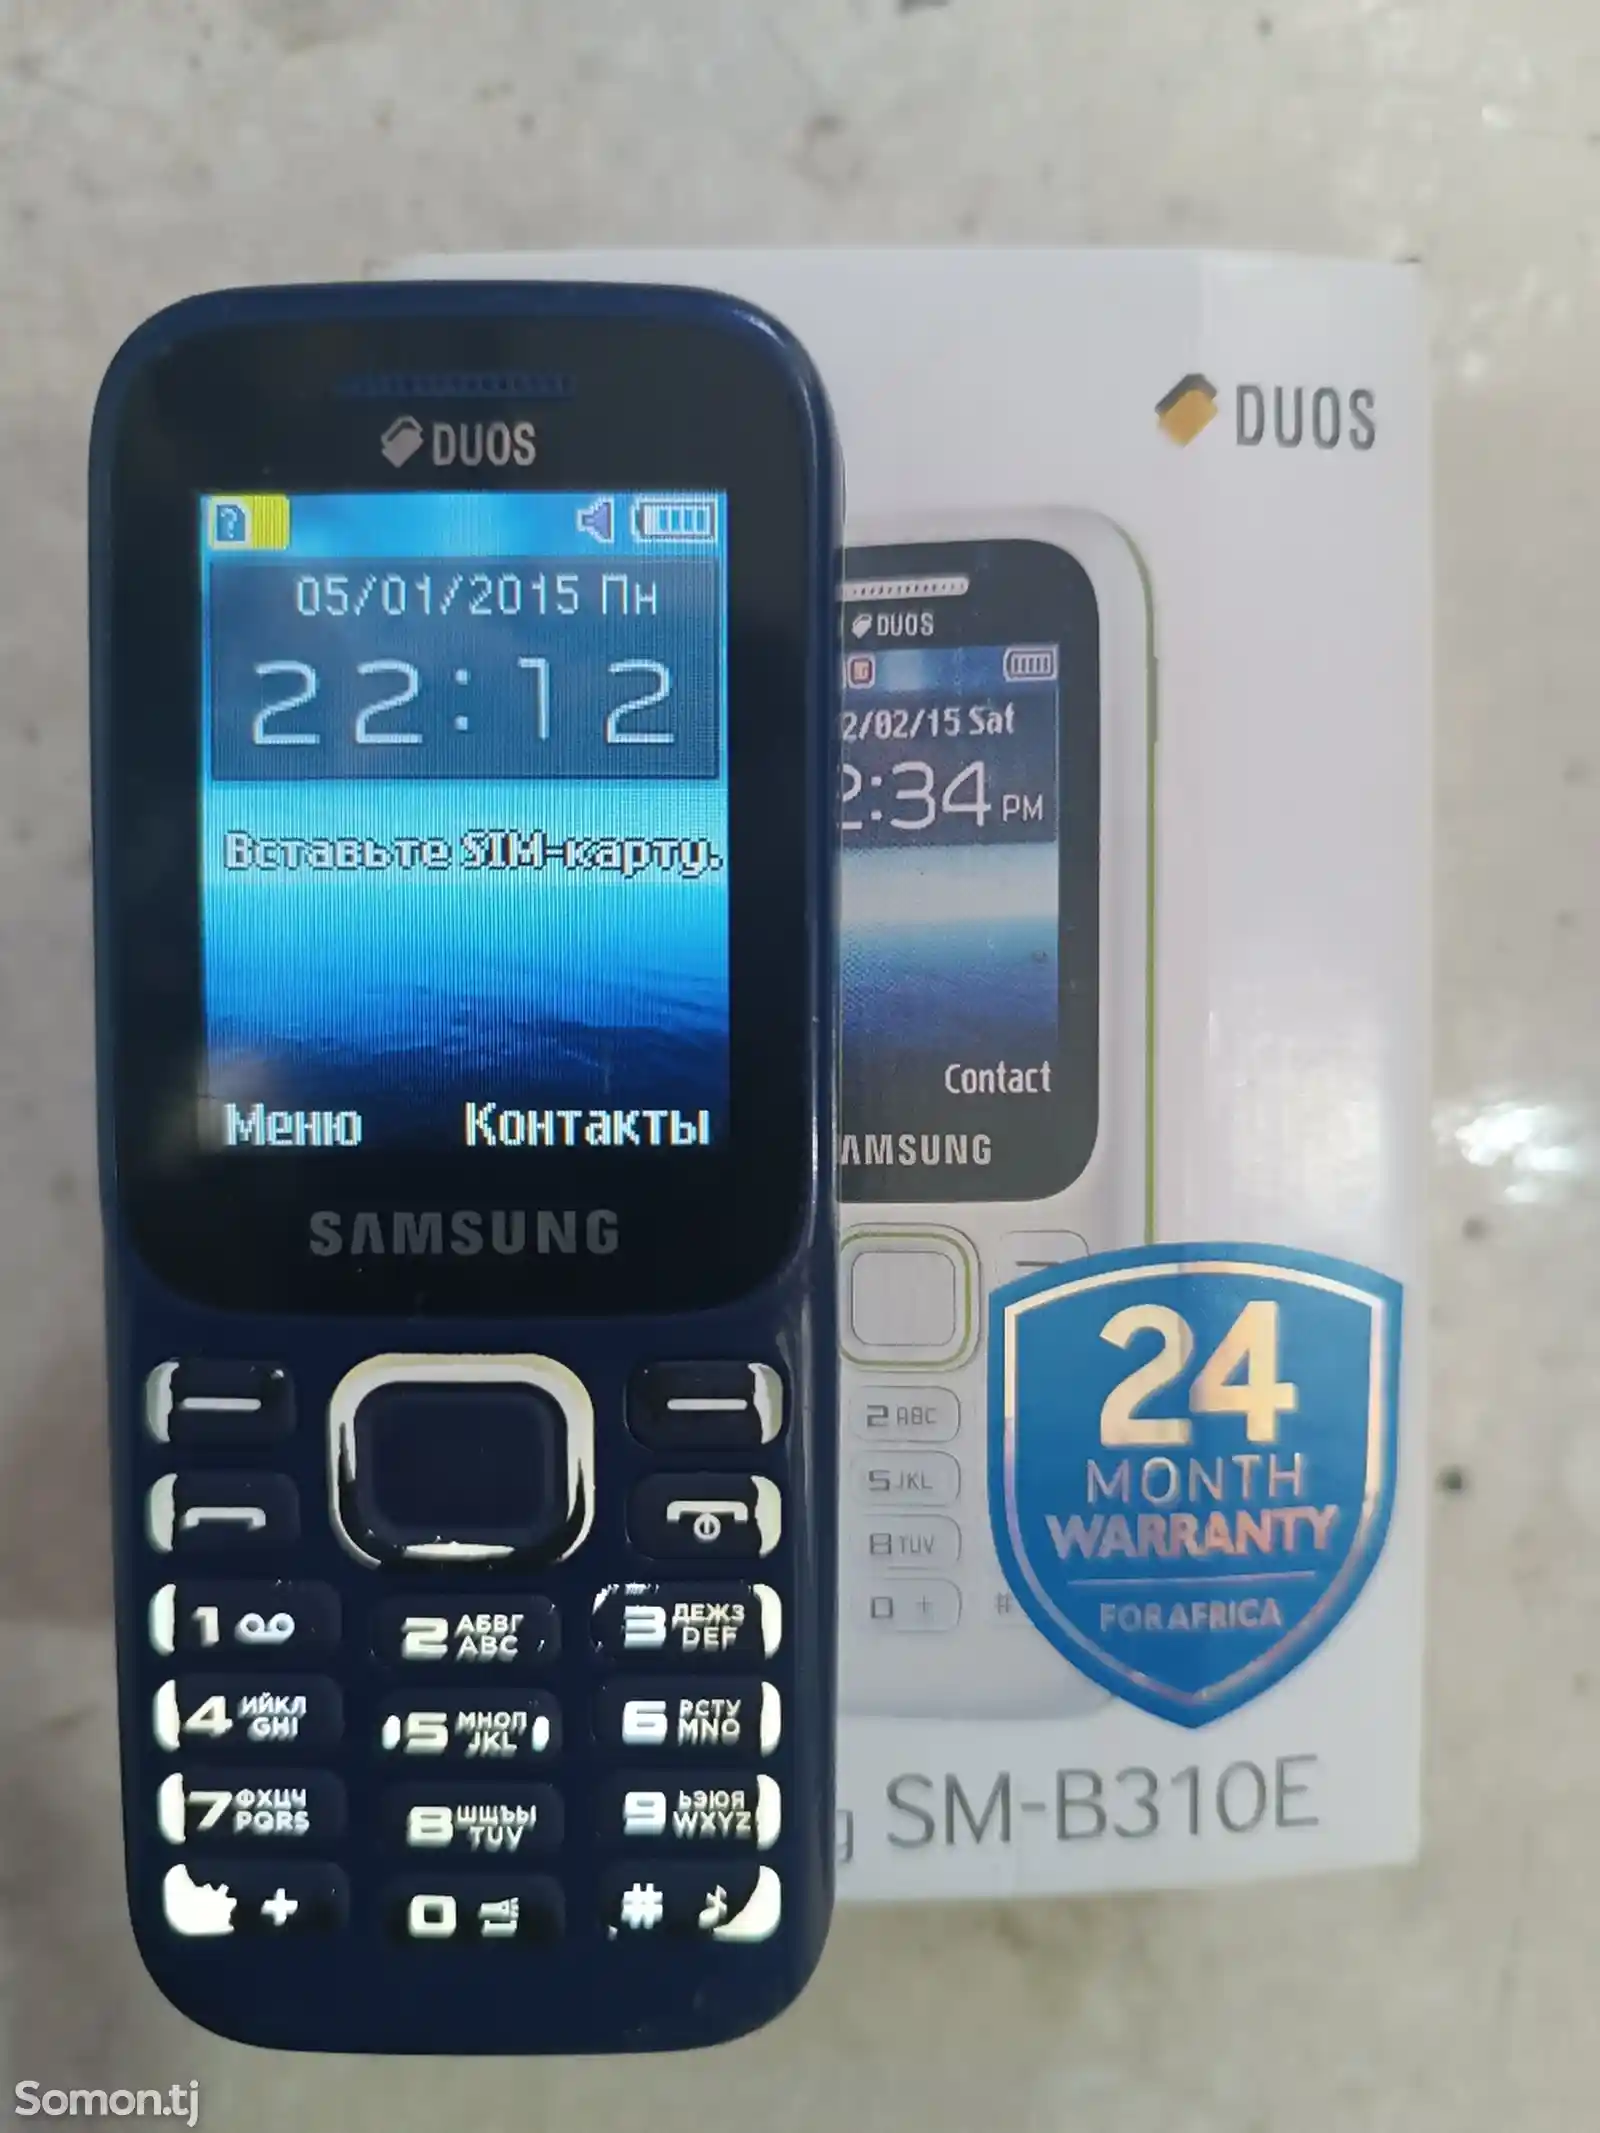 Samsung duos SM-B310e-1